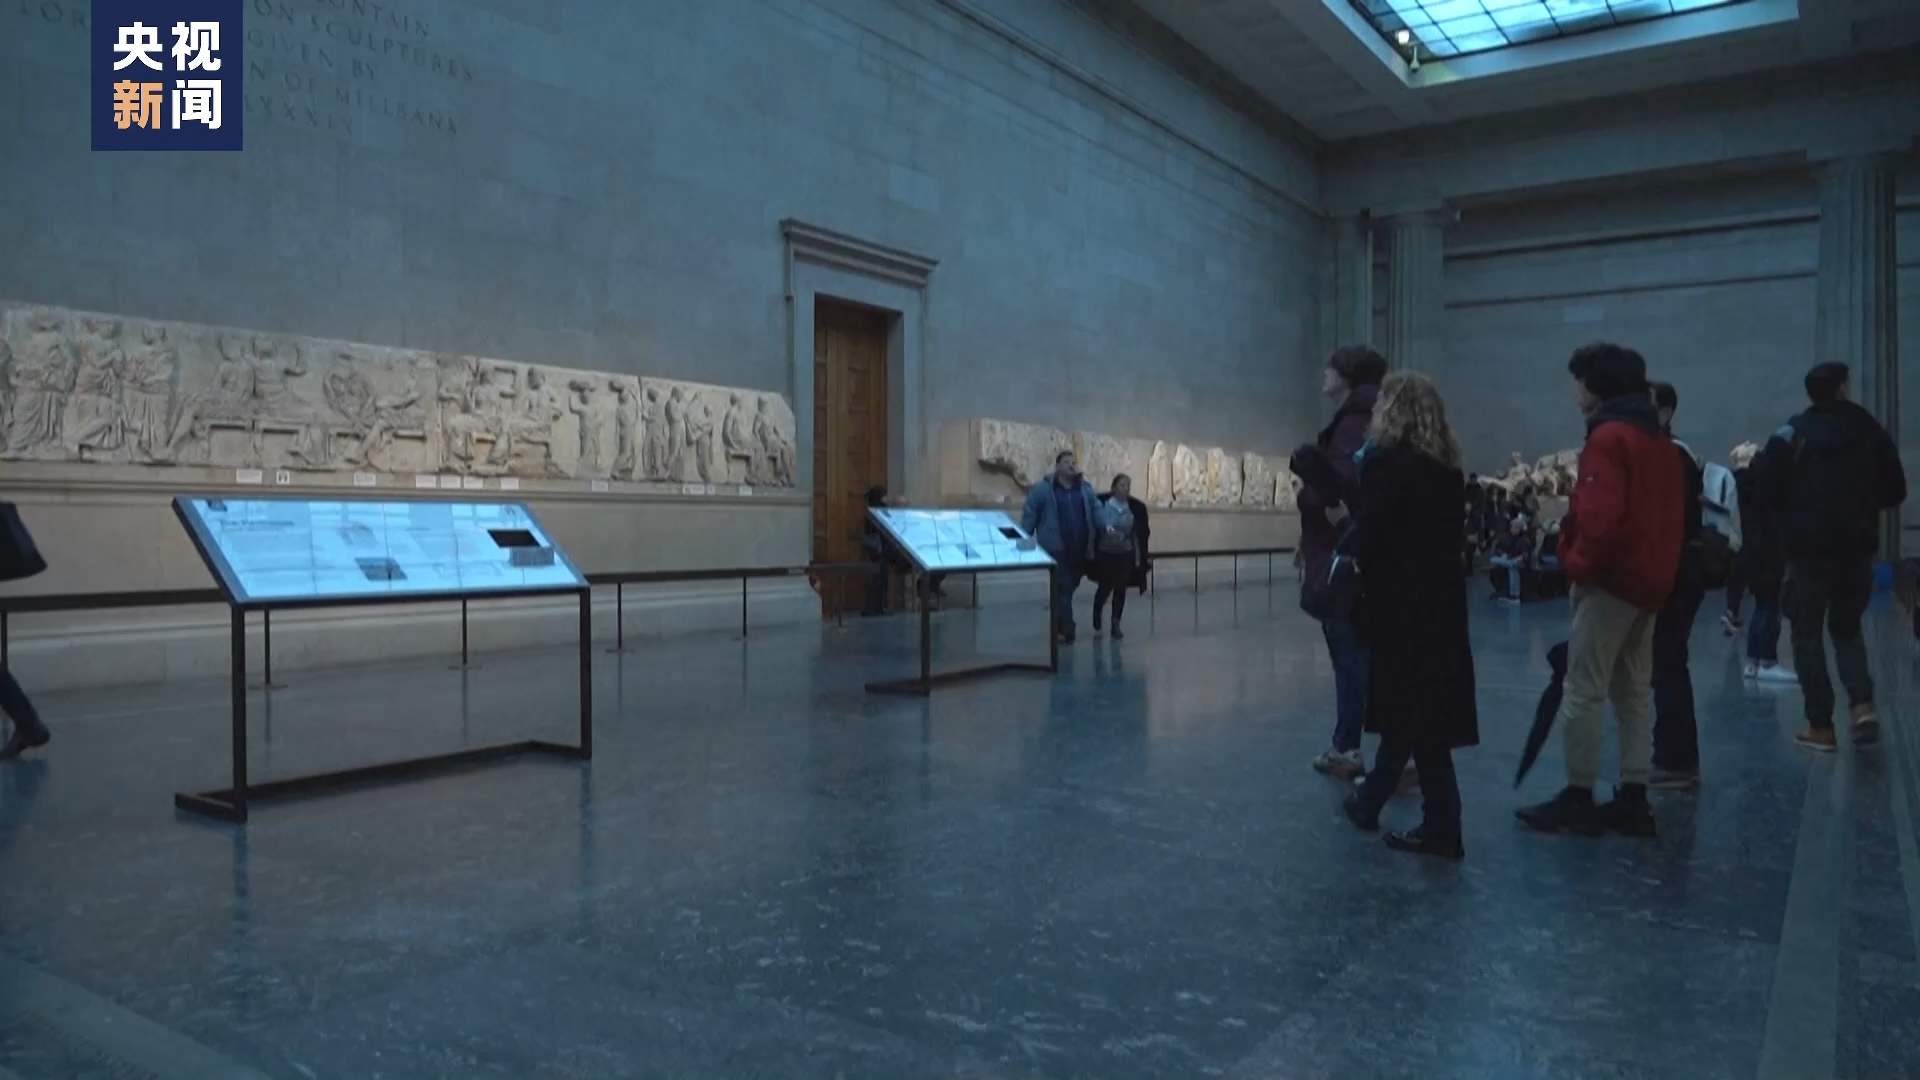 大英博物馆陷监守自盗丑闻 拒不归还掠夺文物遭多方批评